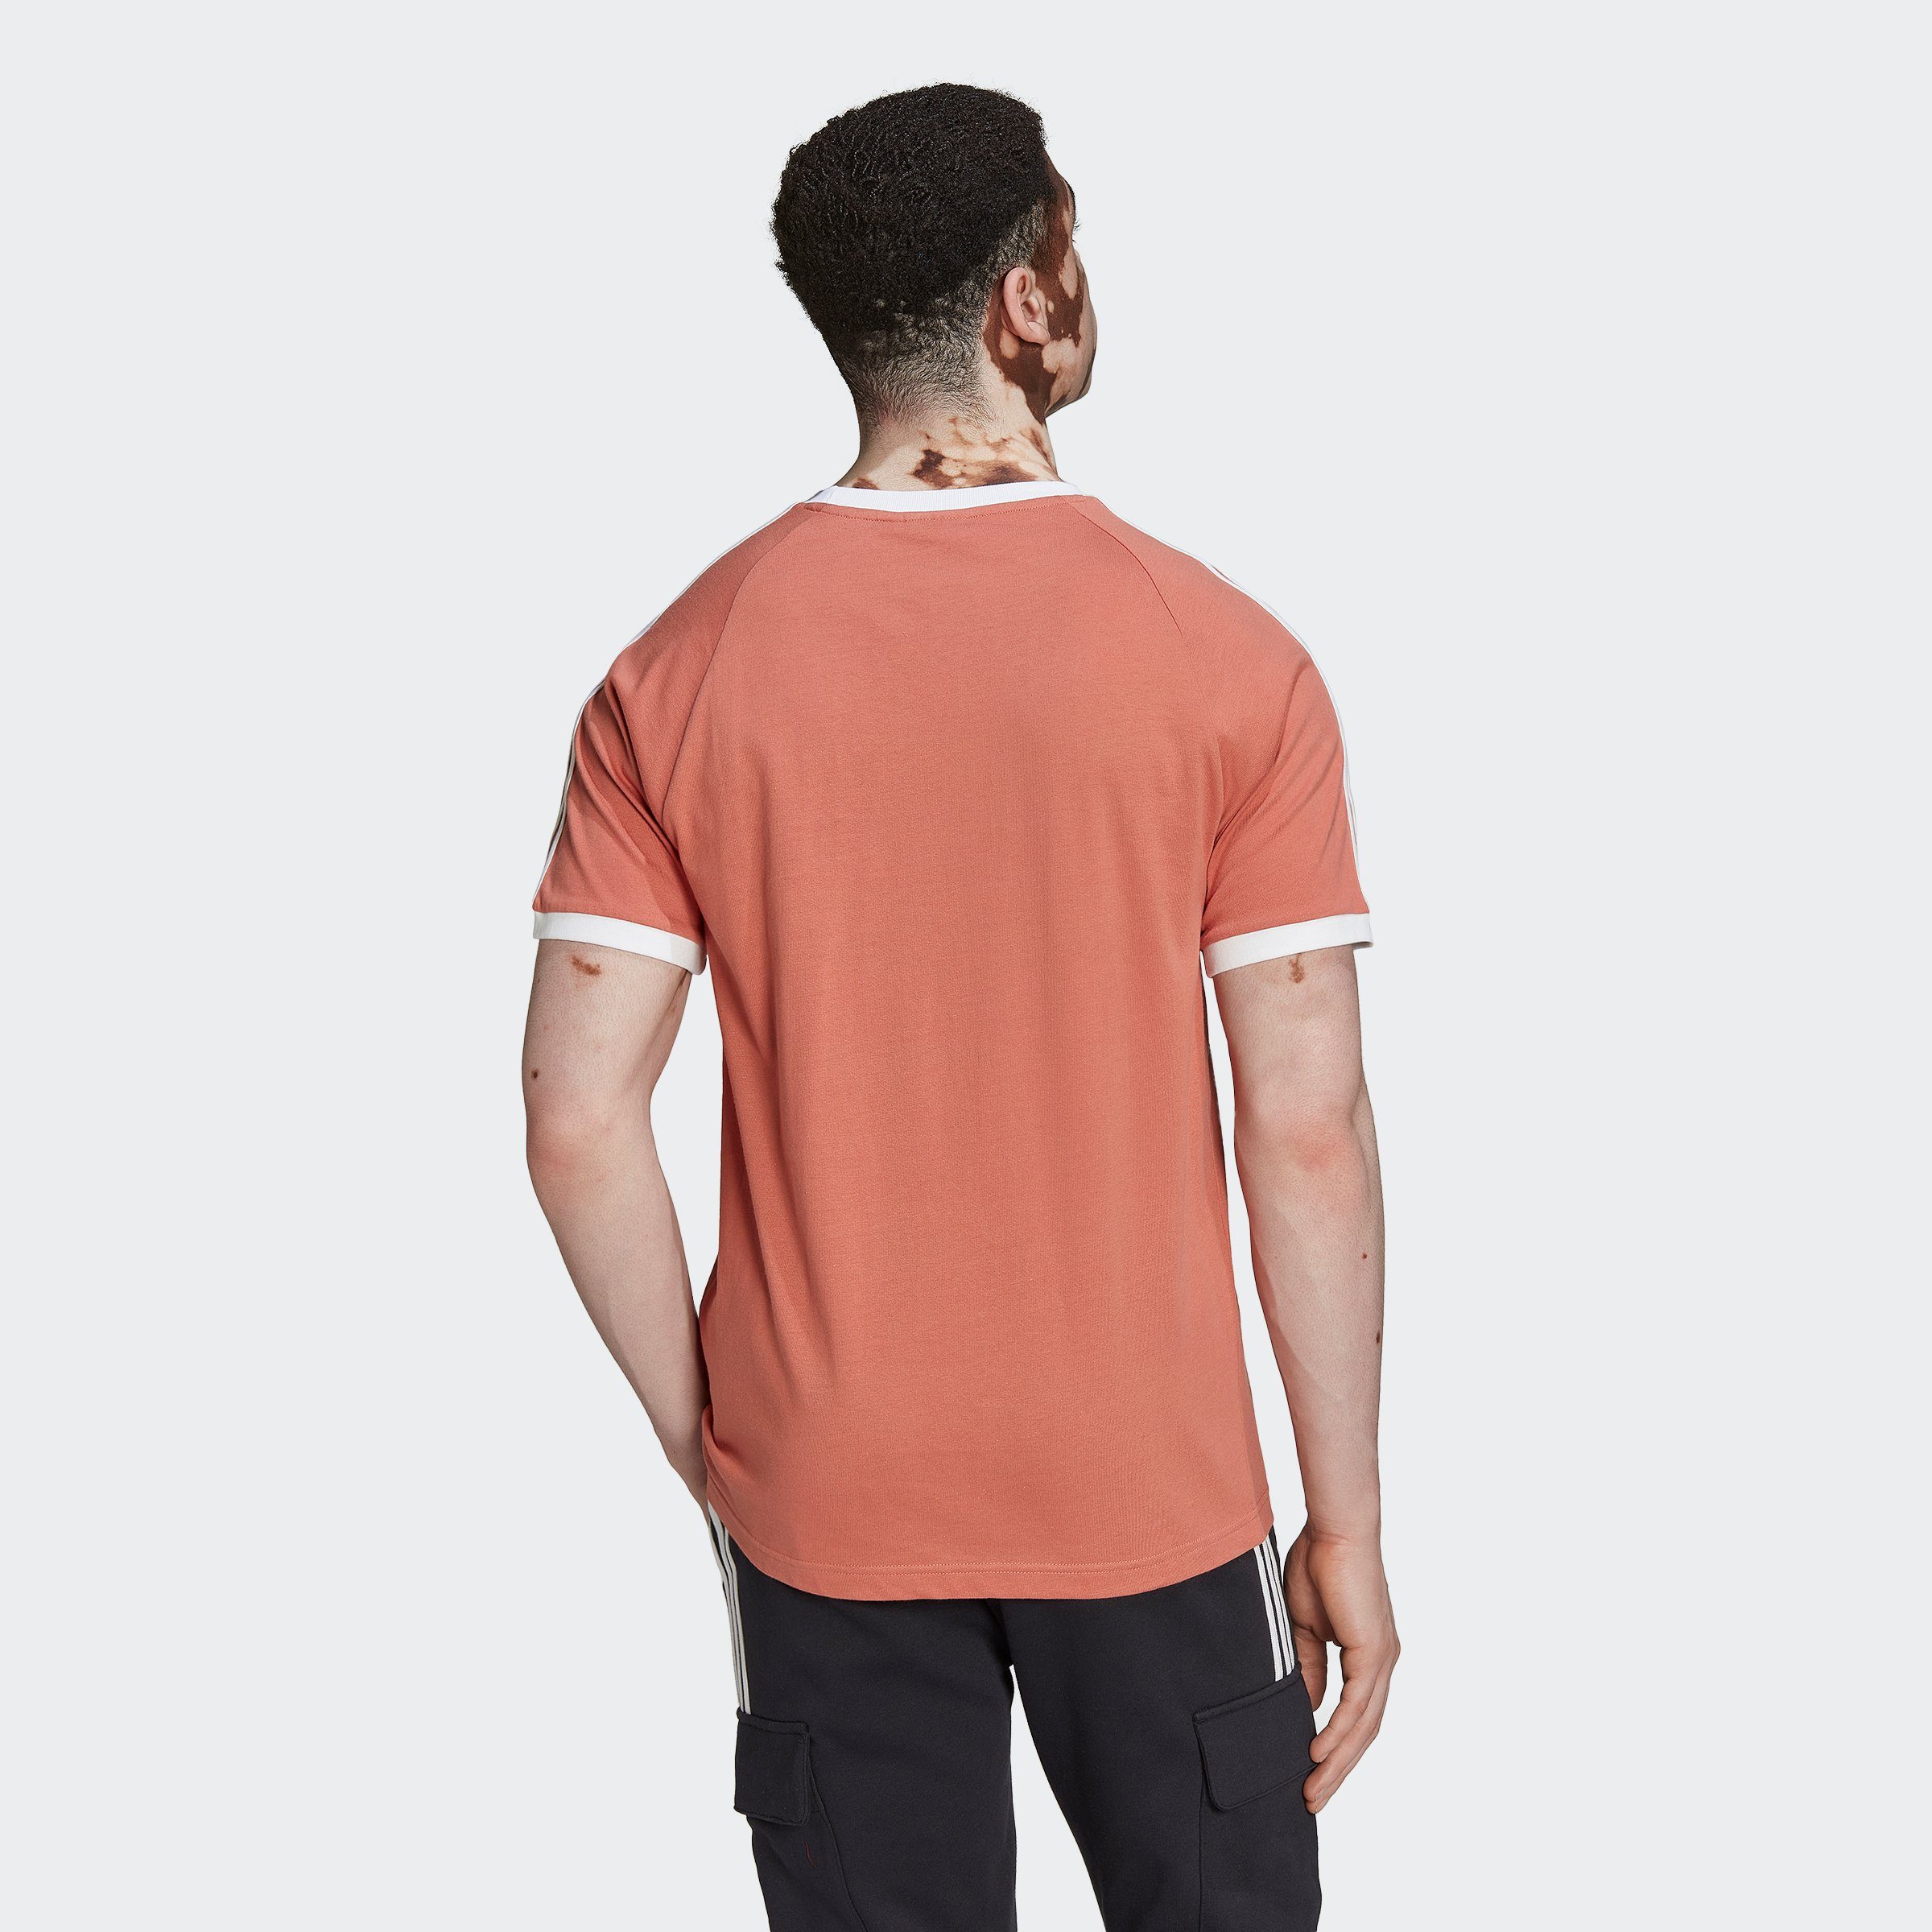 ADICOLOR T-Shirt Originals CLASSICS MAGEAR adidas 3-STREIFEN